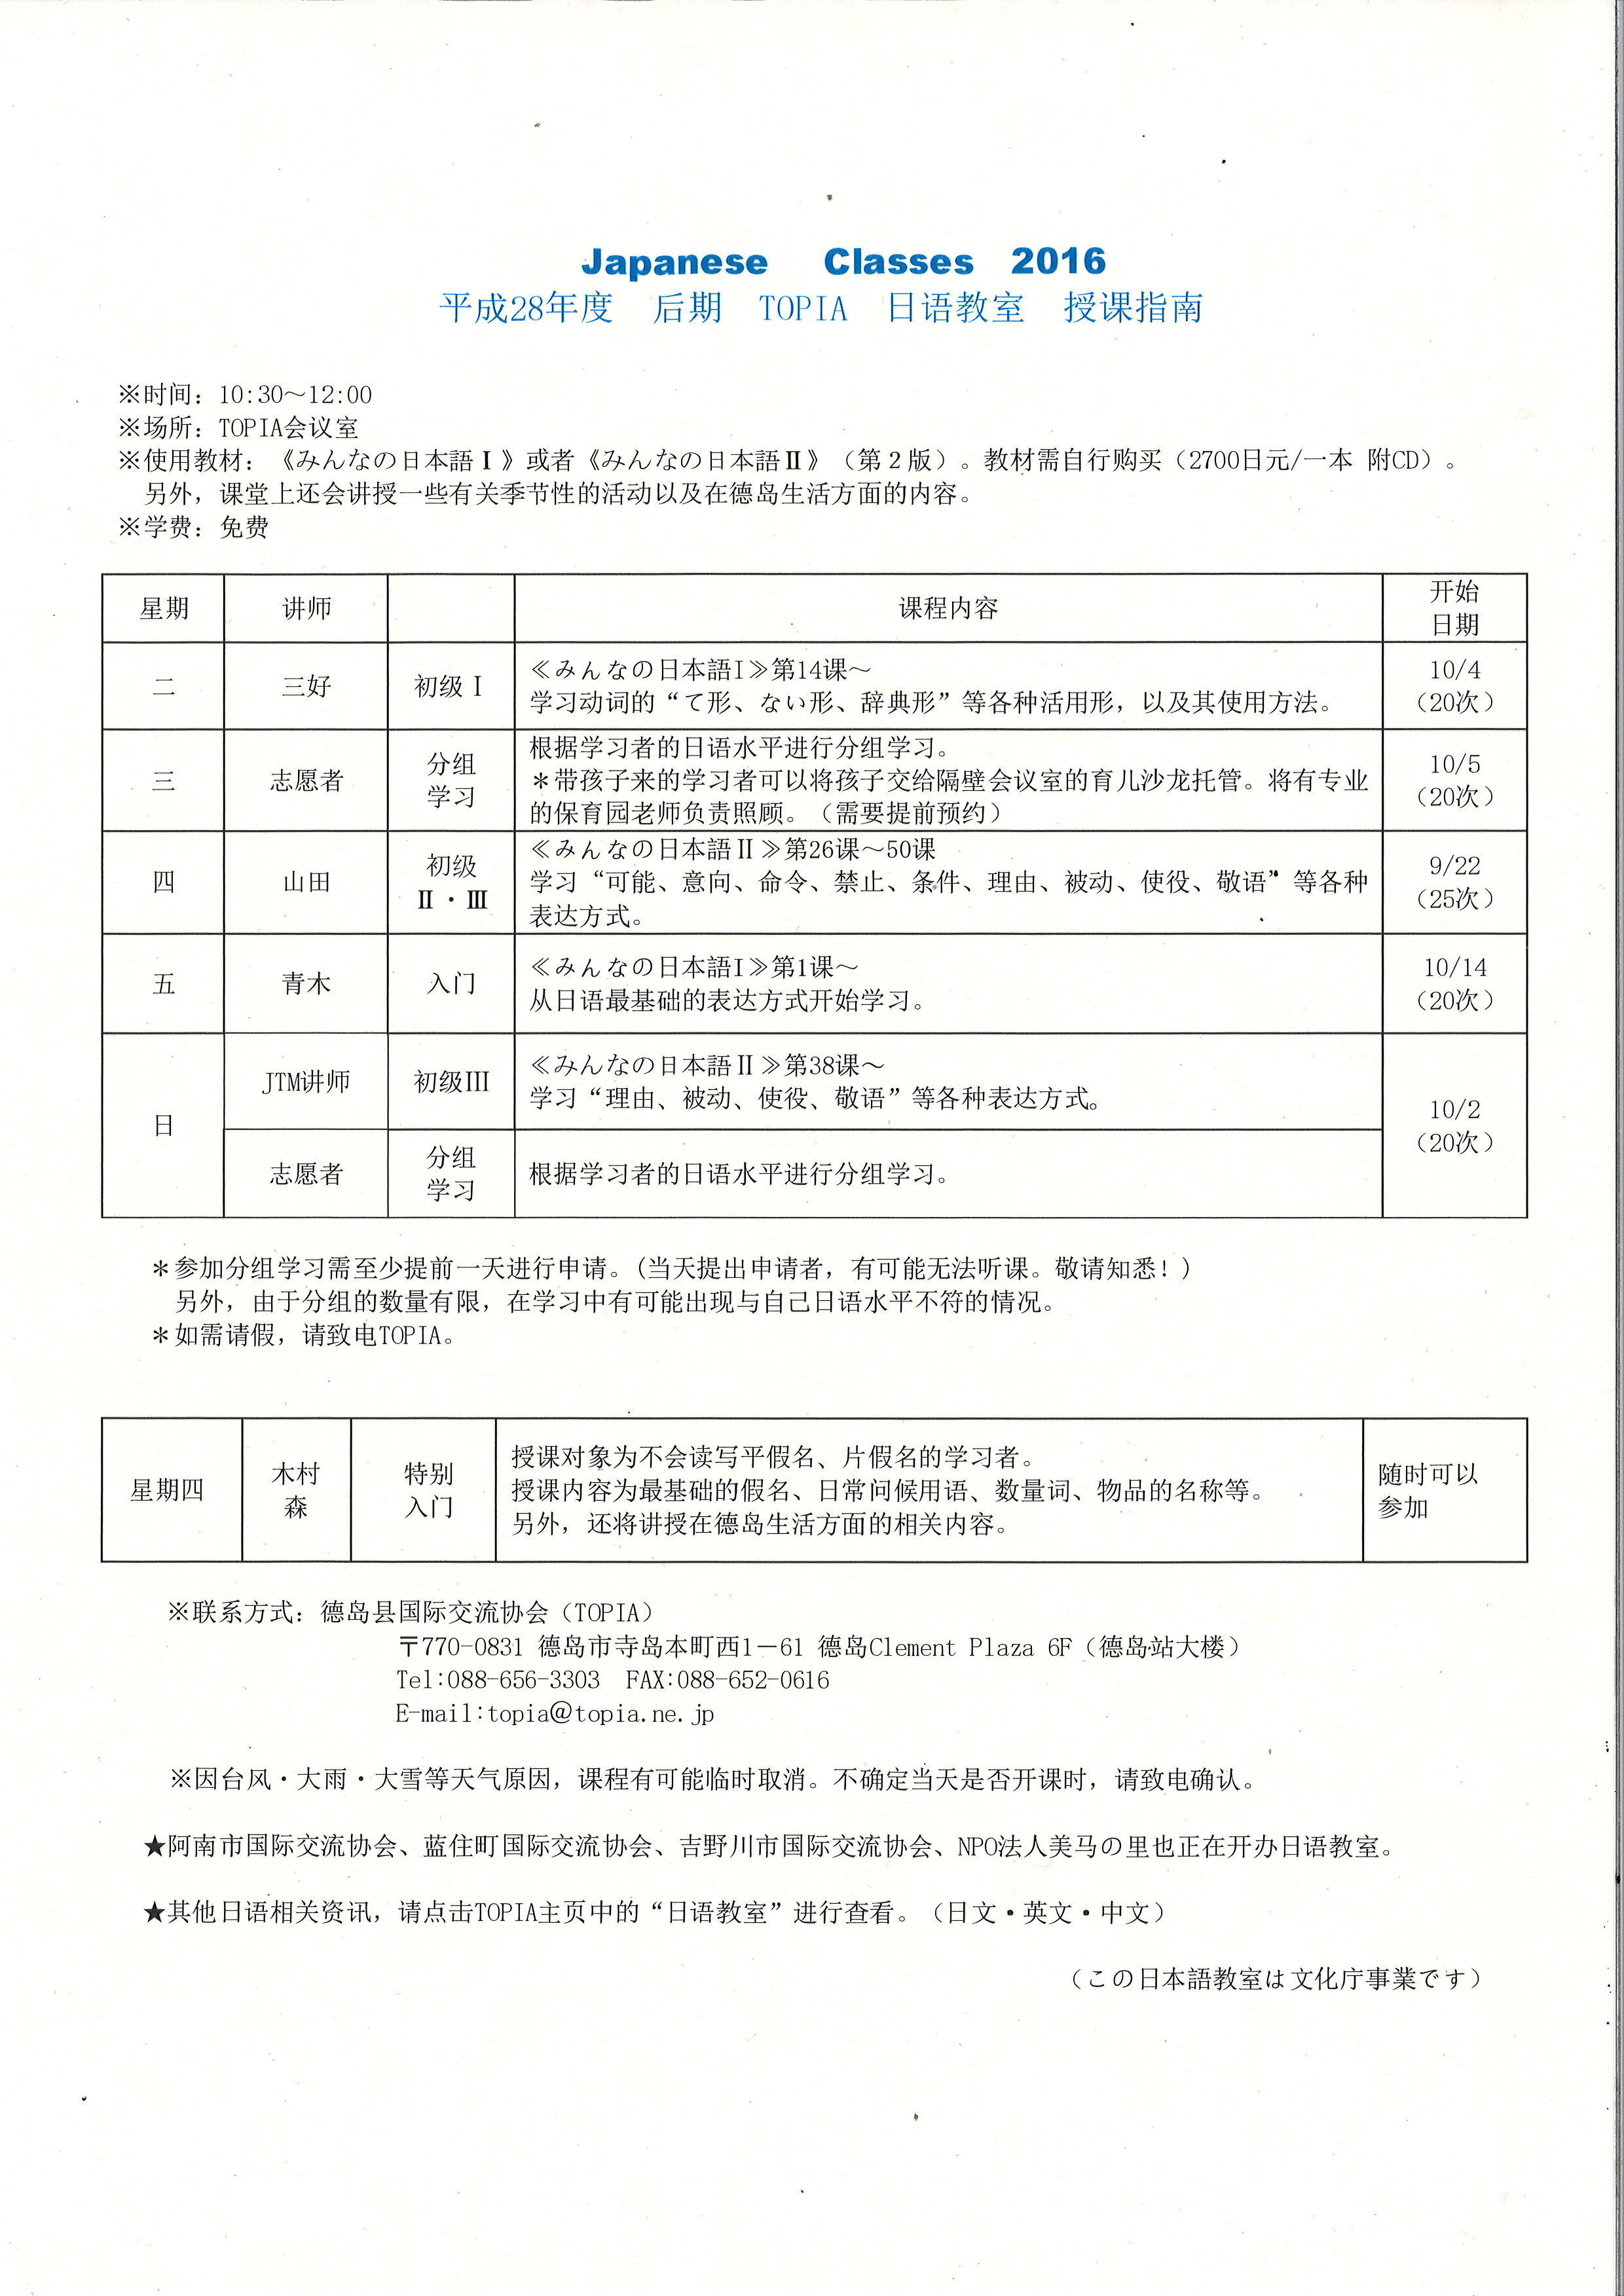 2016后期日语教室课程表.jpg